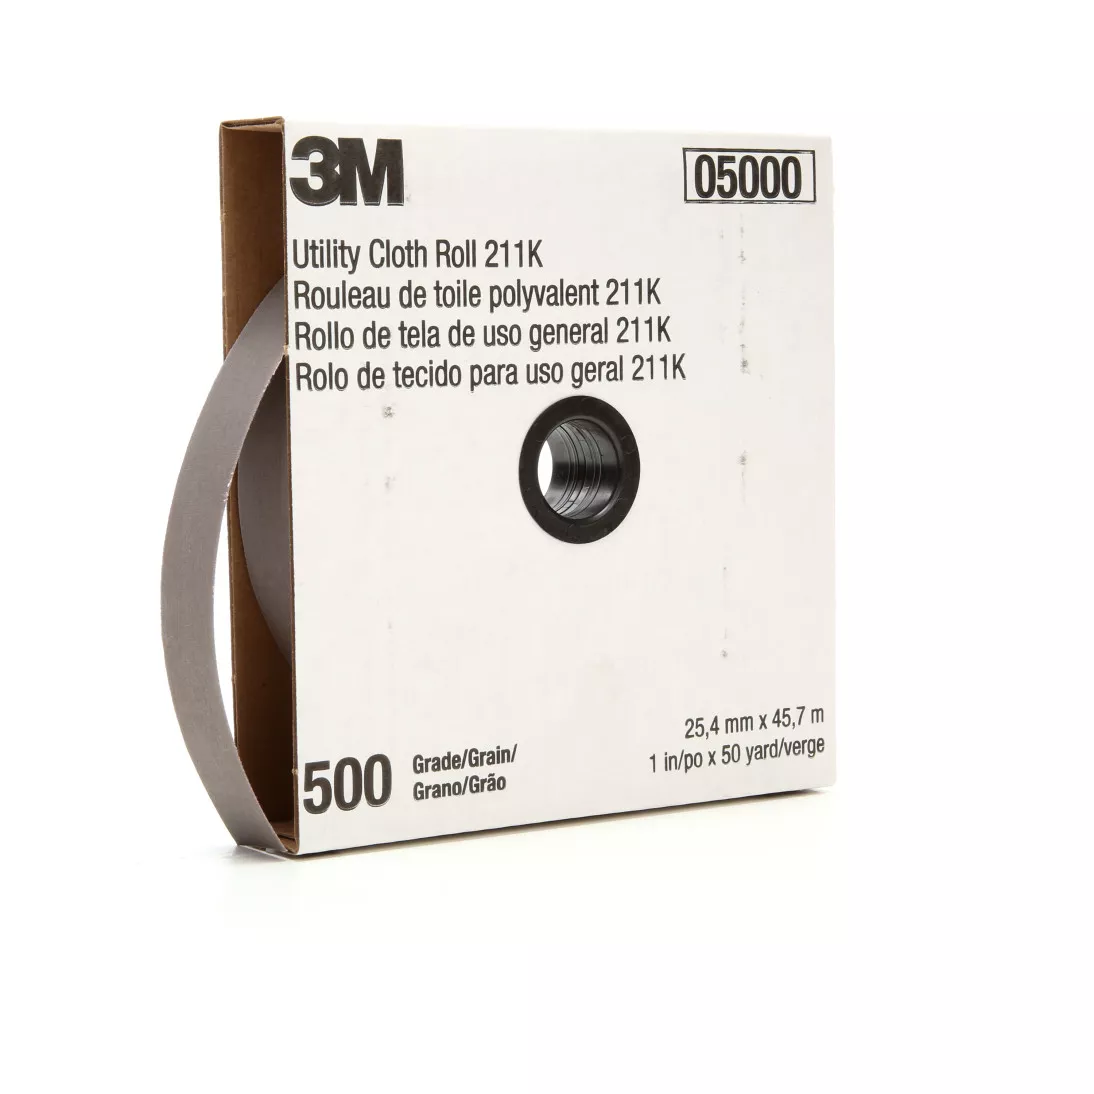 3M™ Utility Cloth Roll 211K, 500 J-weight, 1 in x 50 yd, 5 ea/Case